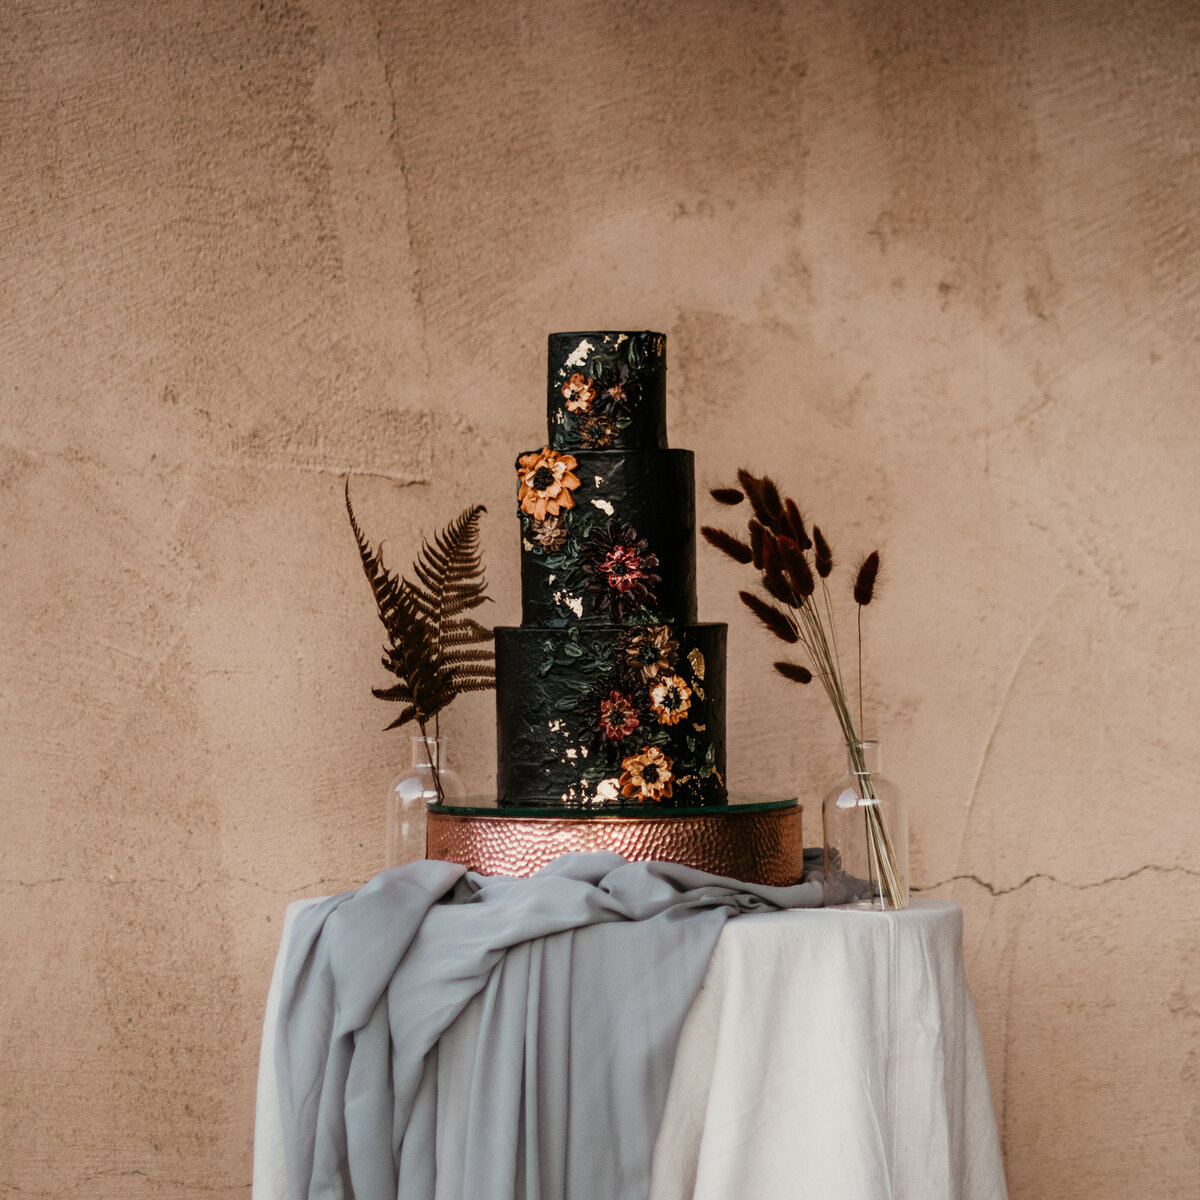 southwest wedding cake on a table